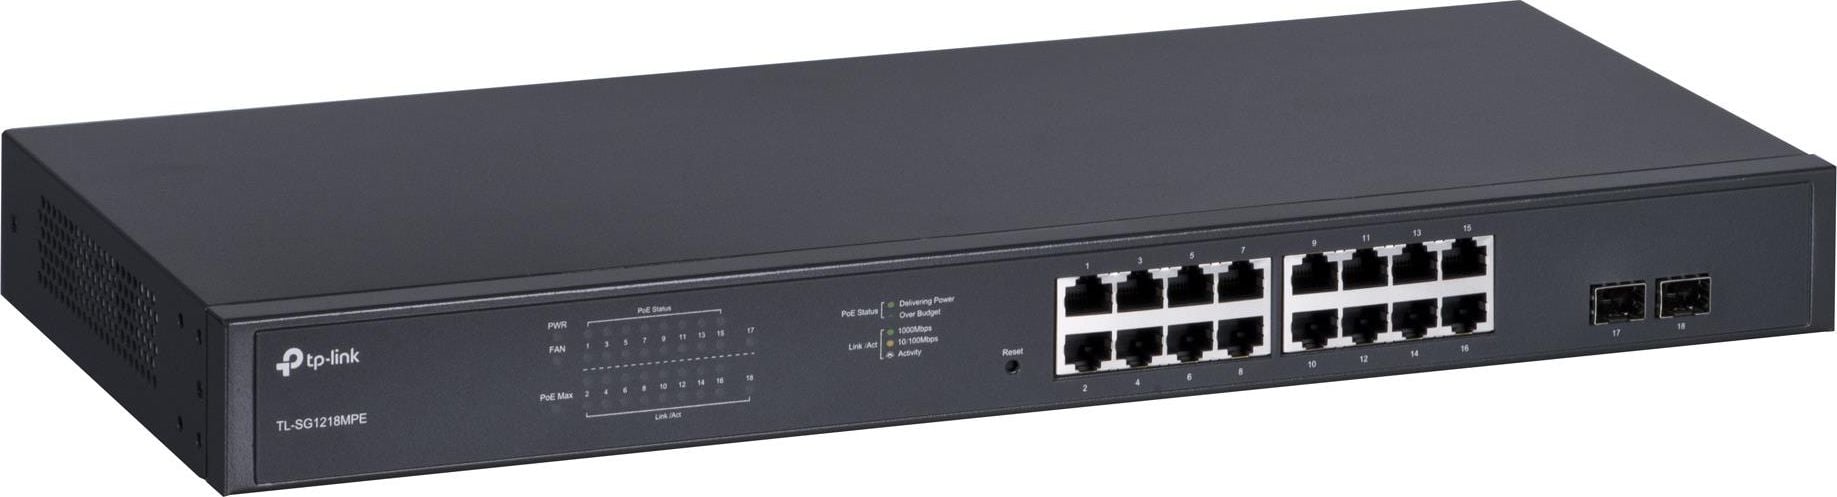 Comutator Switch TP-Link TL-SG1218MPE, Managed, 16 10/100/1000 Mbps RJ45 Ports, 2 Gigabit SFP Ports